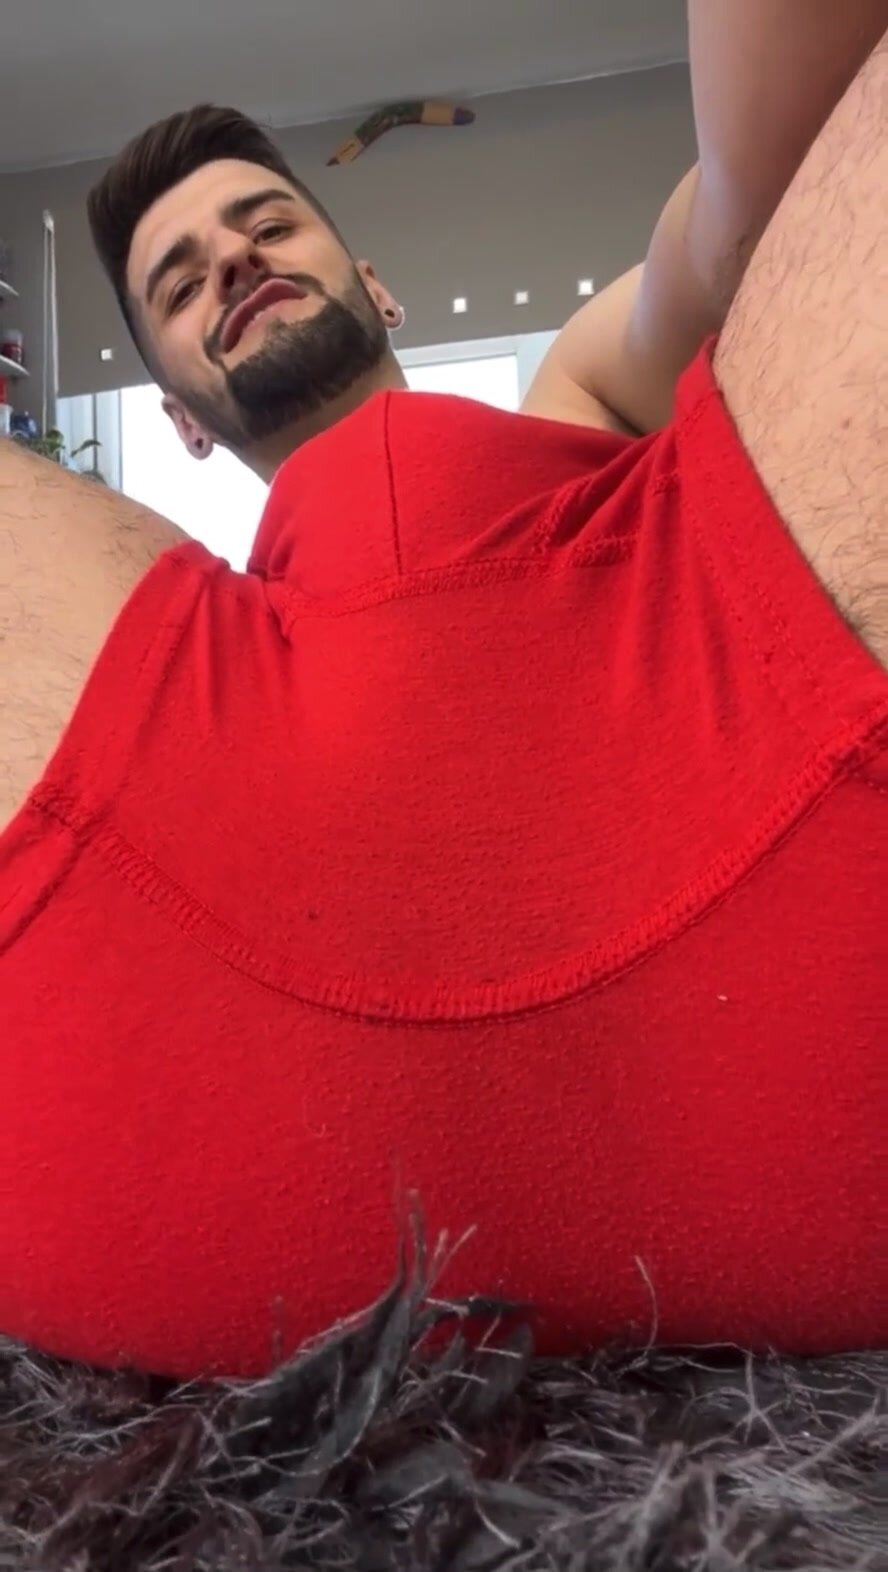 Fart in red underwear